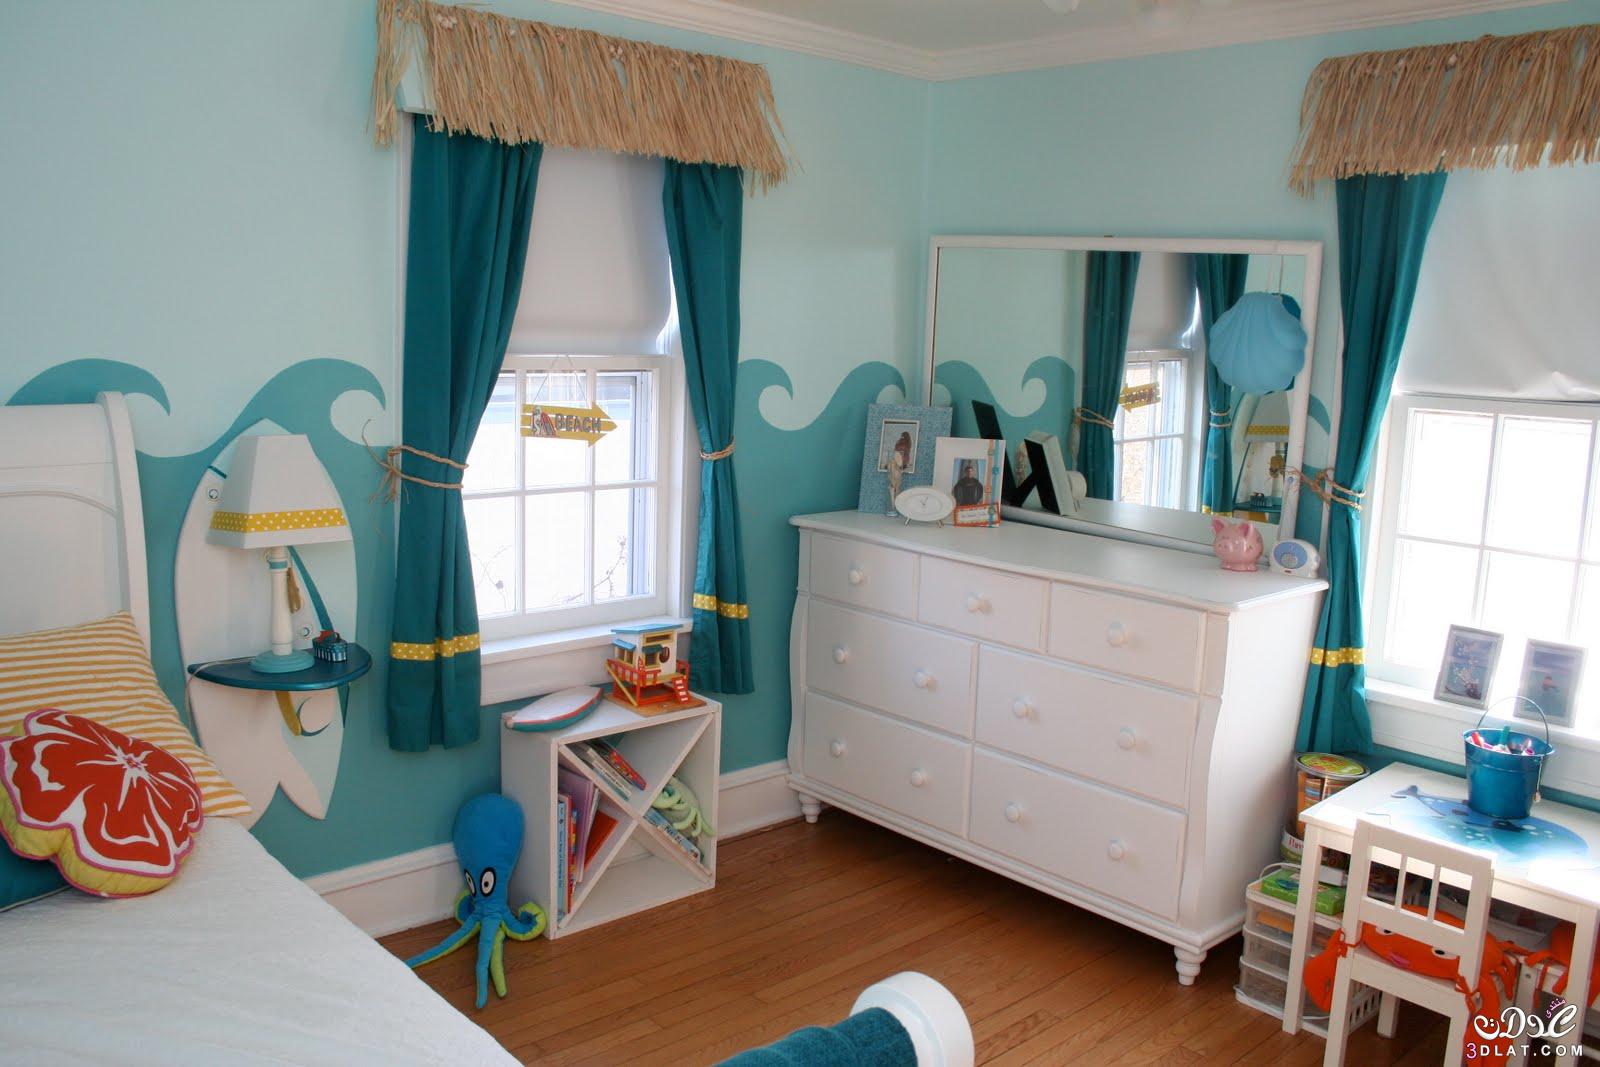 افكار تزين غرفة نوم الاطفال 2021 افكار غرف نوم اطفال في غاية الجمال والتنسيق زاهرة الياياسمين